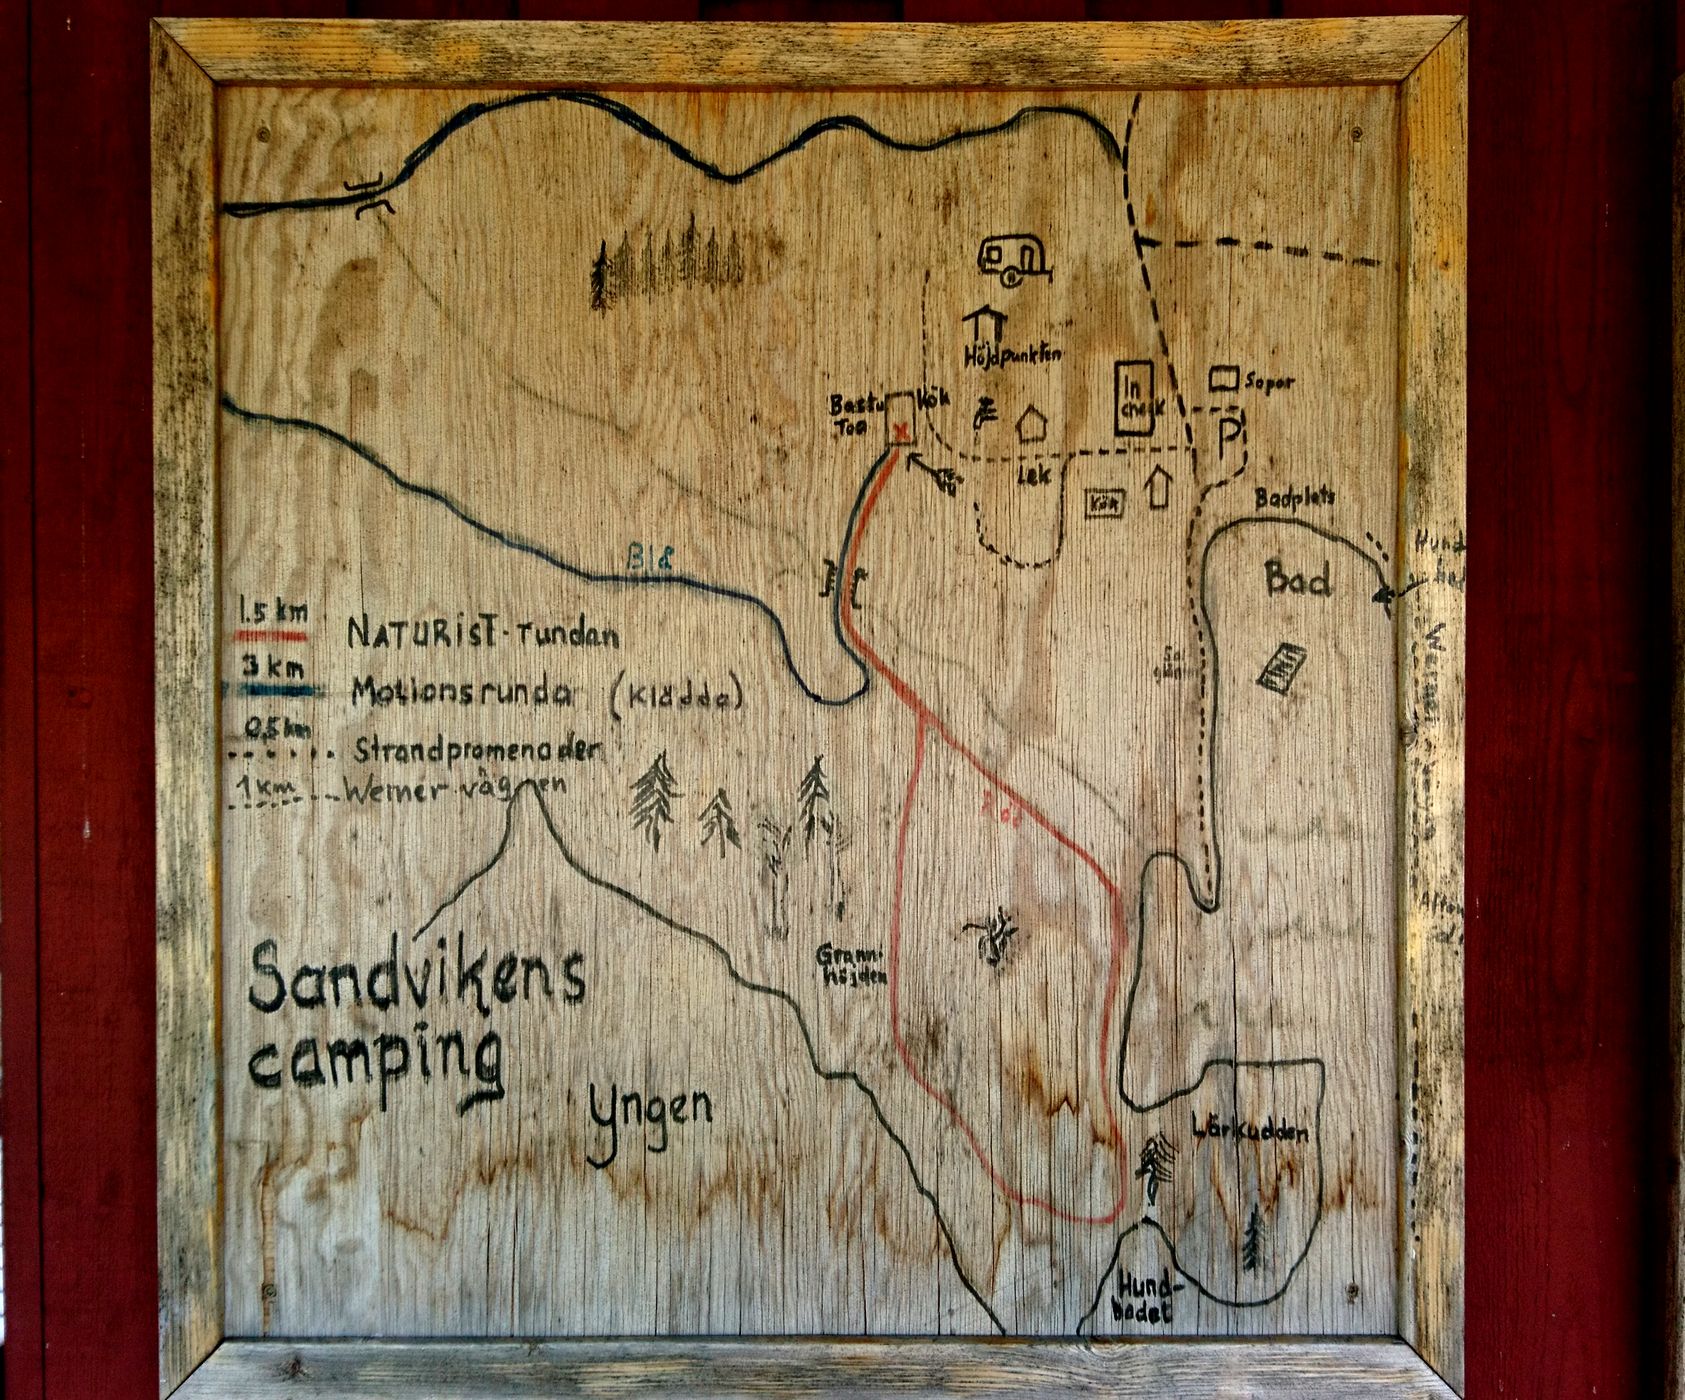 Der Plan des Camps auf Holz gemalt hängt an einer Hauswand im typischen Rot der schwedischen Holzhäuser. Die „Motionsrunda“ (Bewegungsrunde) soll man in Klädda (Kleidern) absolvieren (1/15)